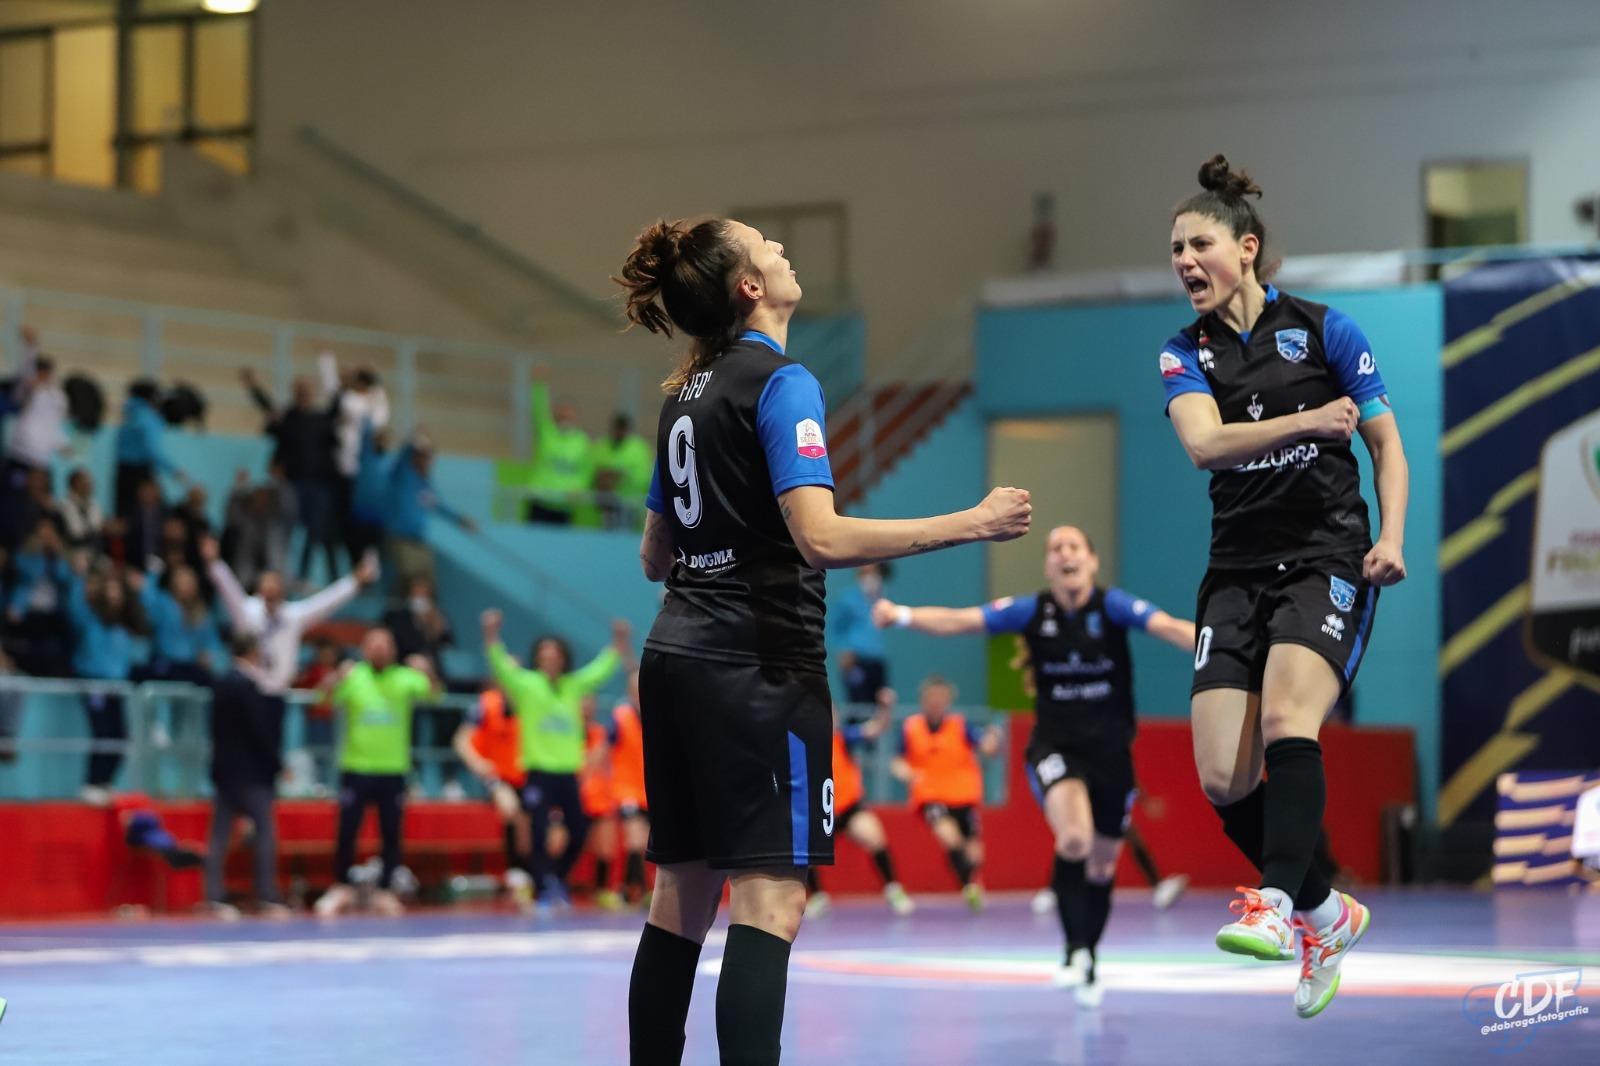 Calcio a 5 femminile: Coppa Italia, il Città di Falconara batte la Lazio all’ultimo secondo e vola in finale